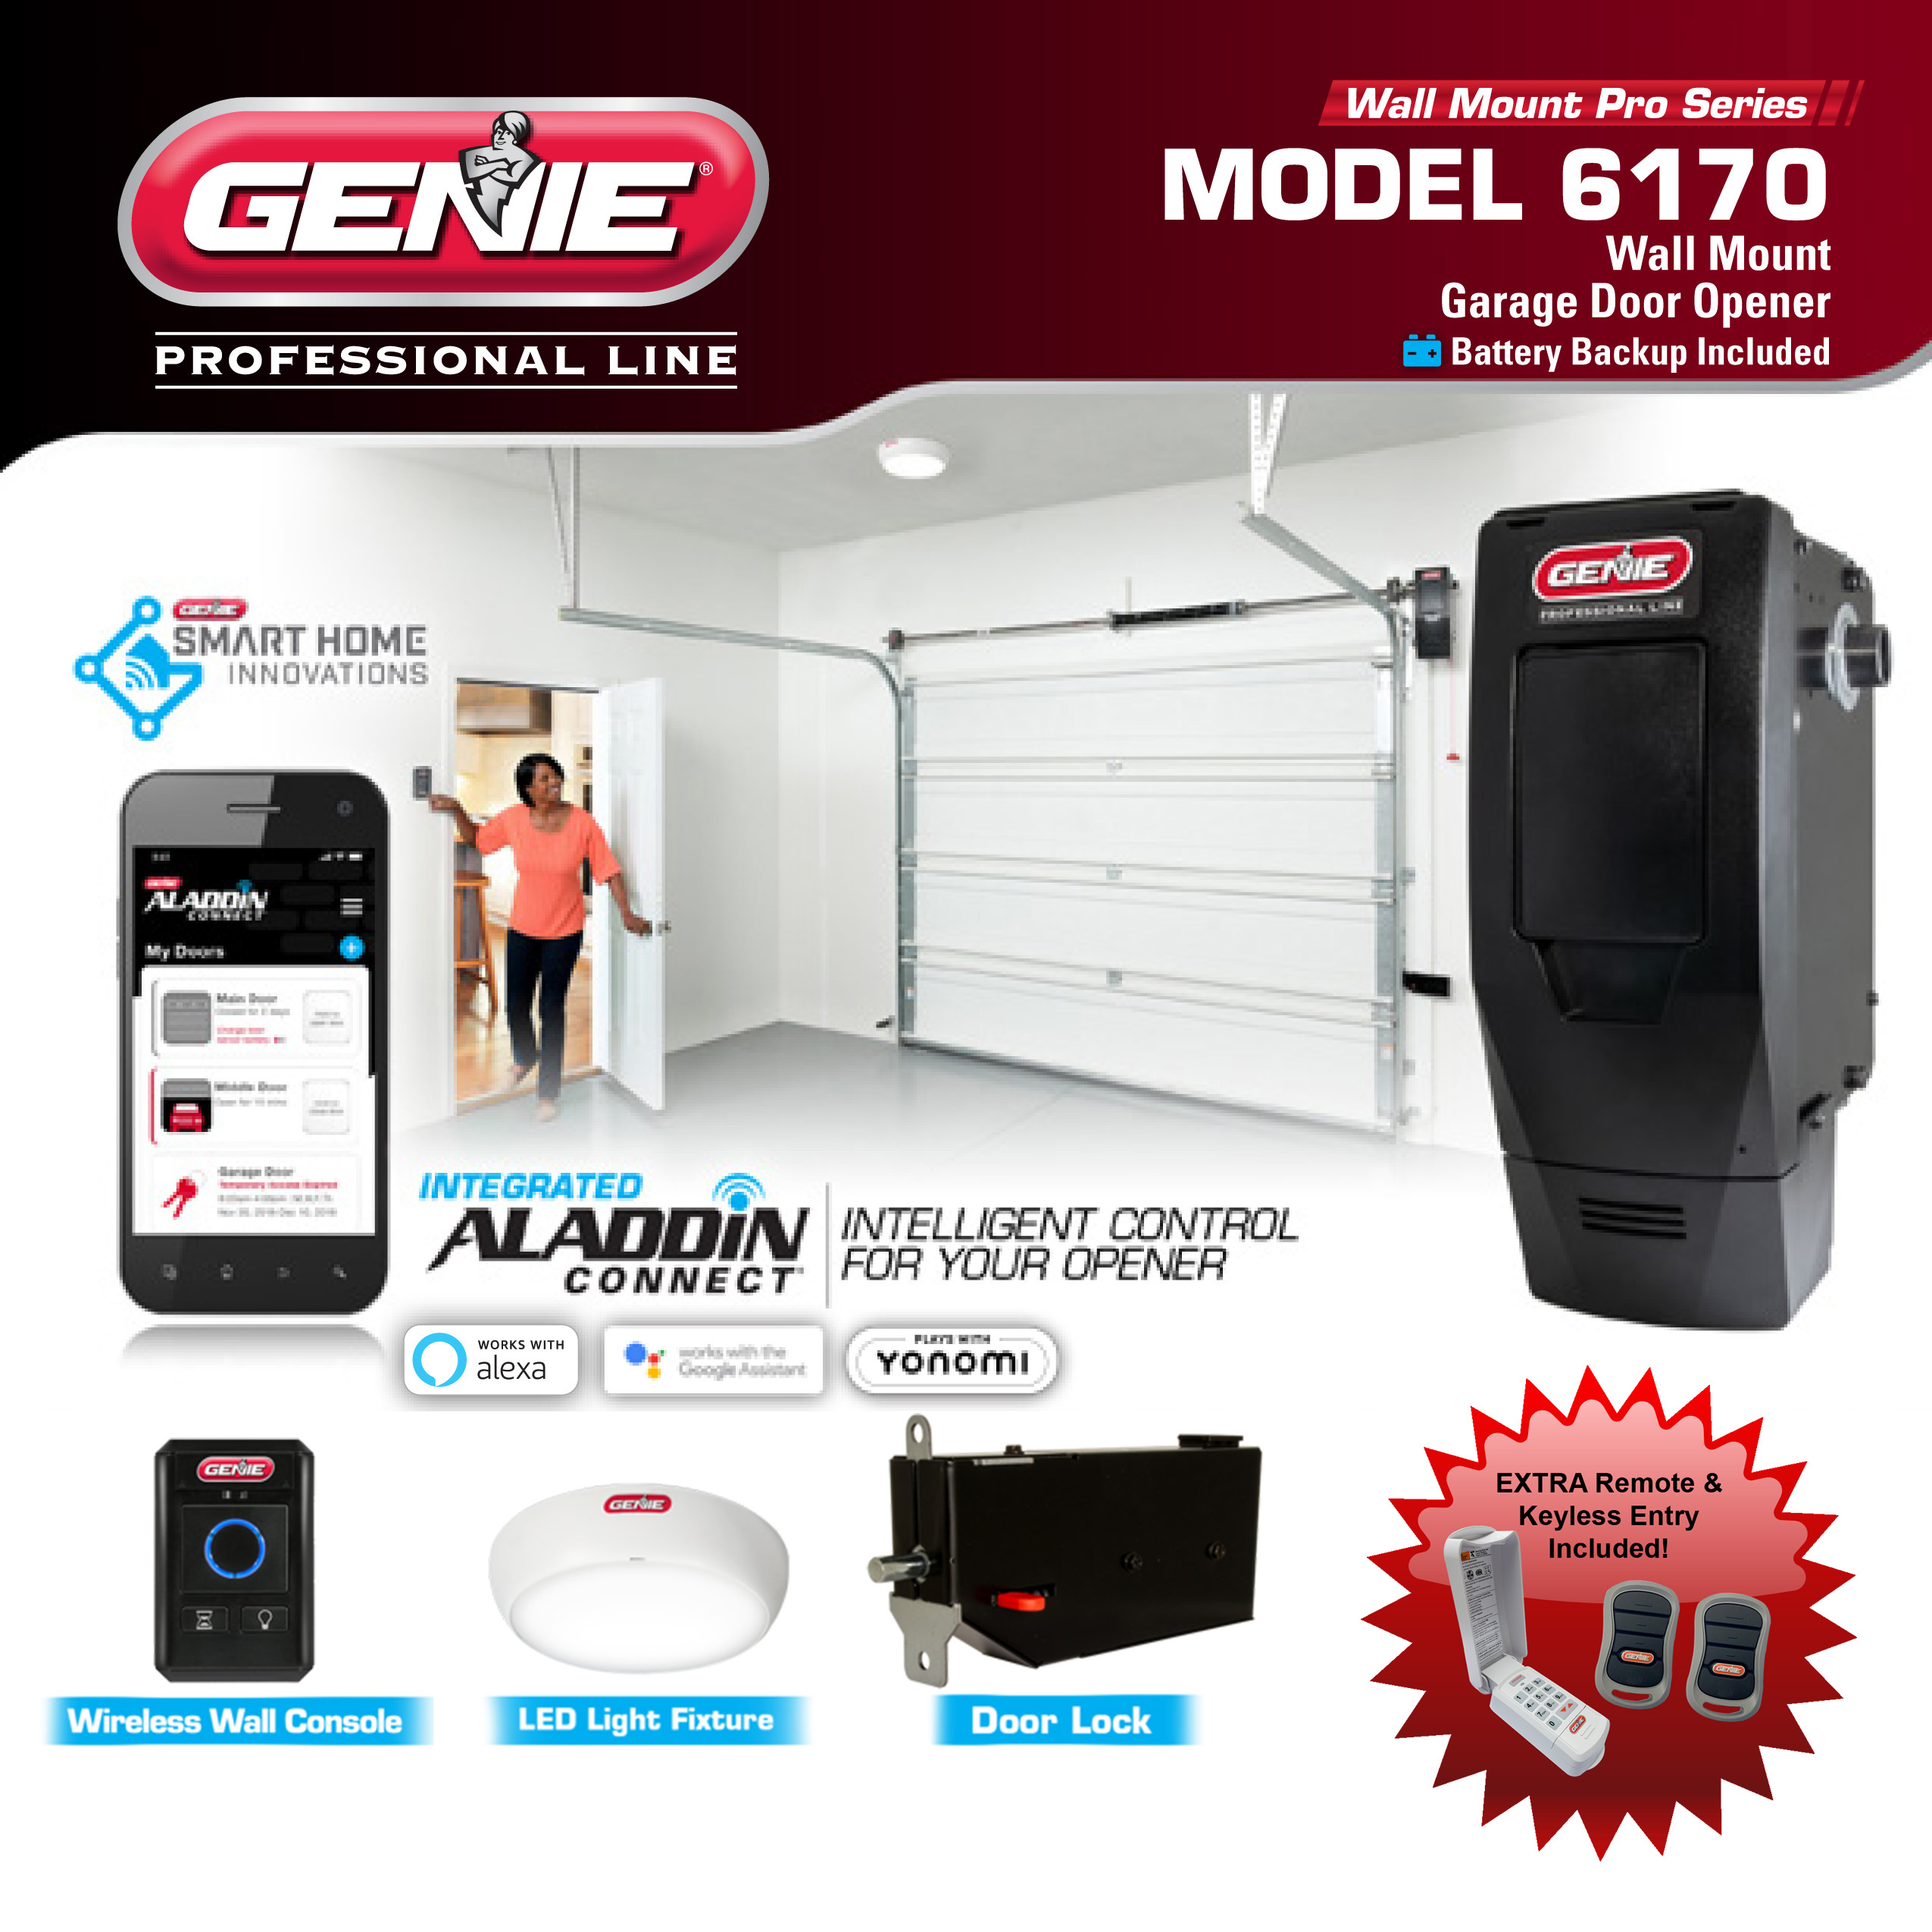 Genie Wall Mount Pro Series Garage Door Opener Model 6170 2 Remotes Keyless Entry Included Garage Door Stuff